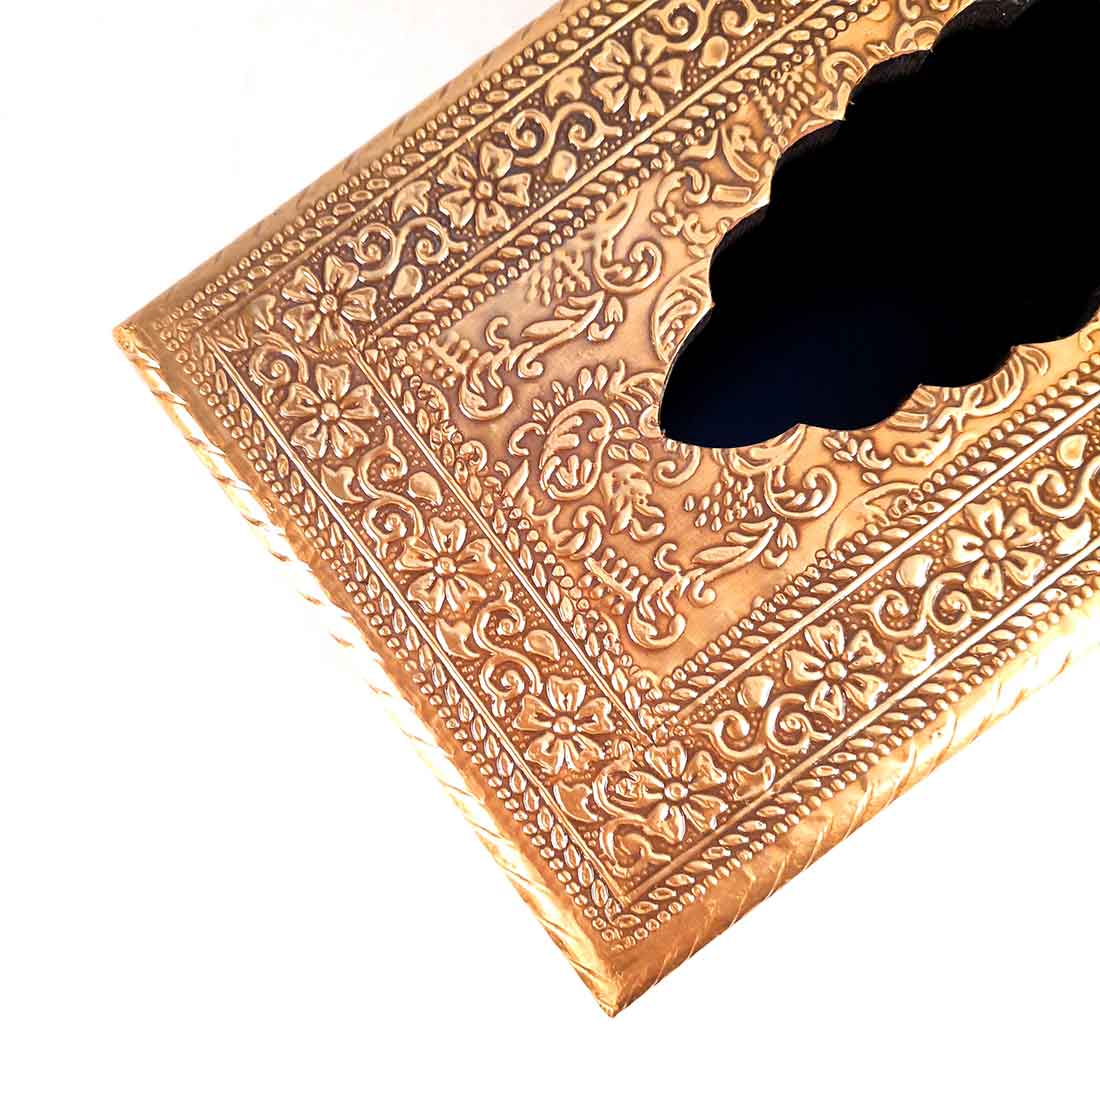 Brass Embellished Tissue Holder - Dining Table Decoration Items - ApkaMart